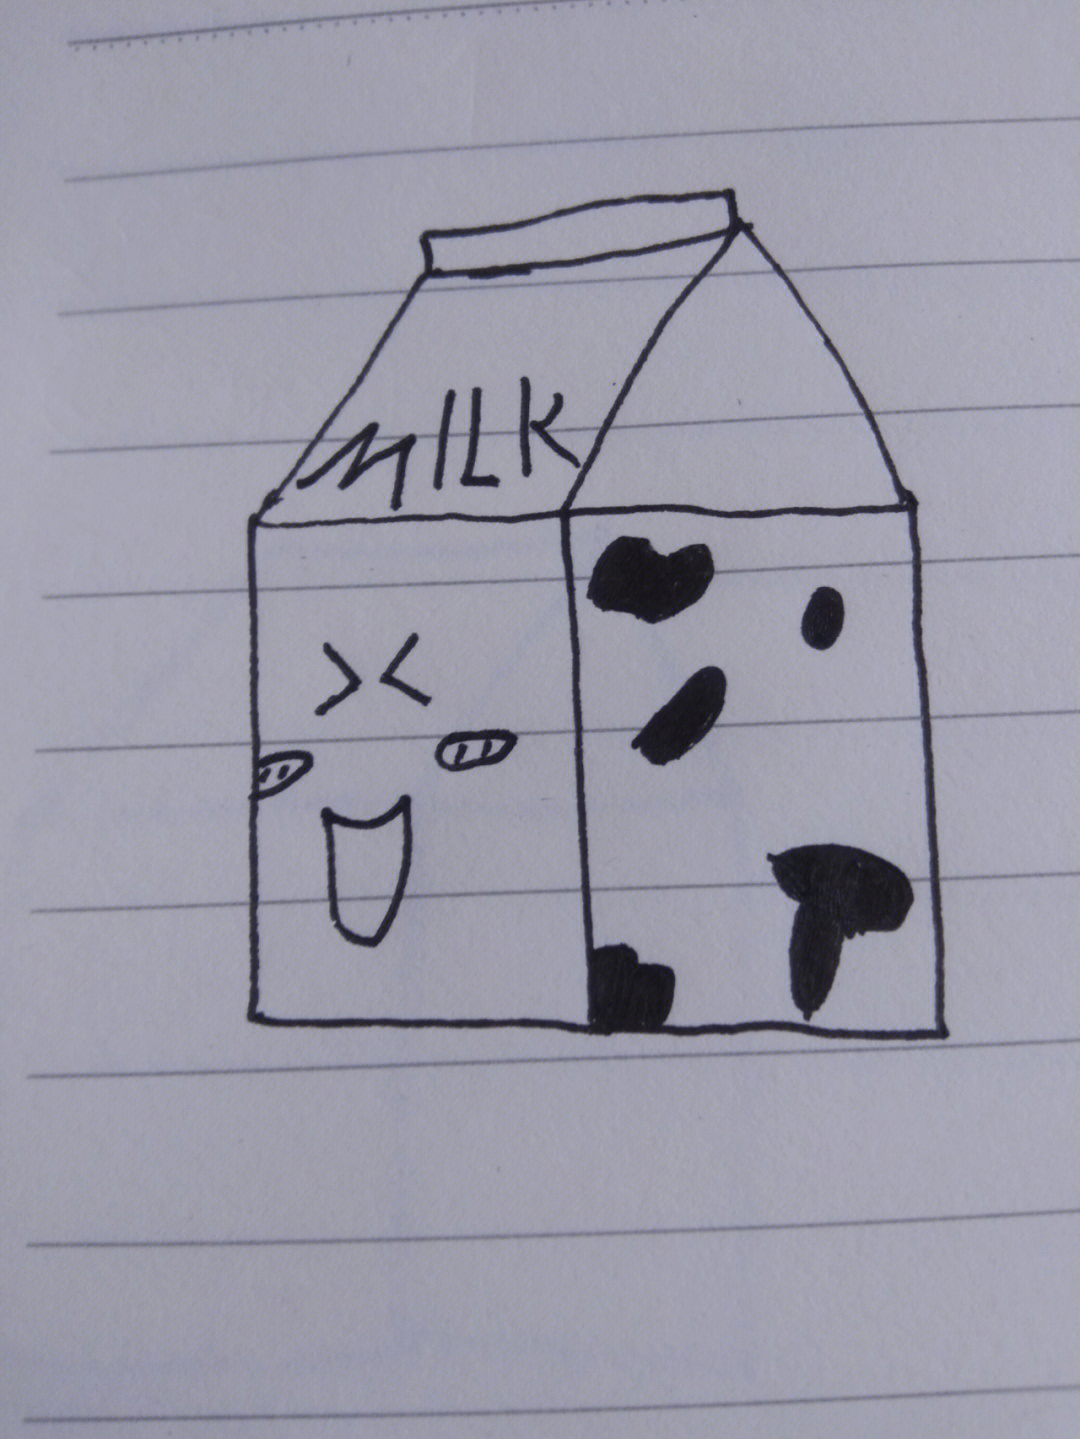 牛奶制品简笔画图片